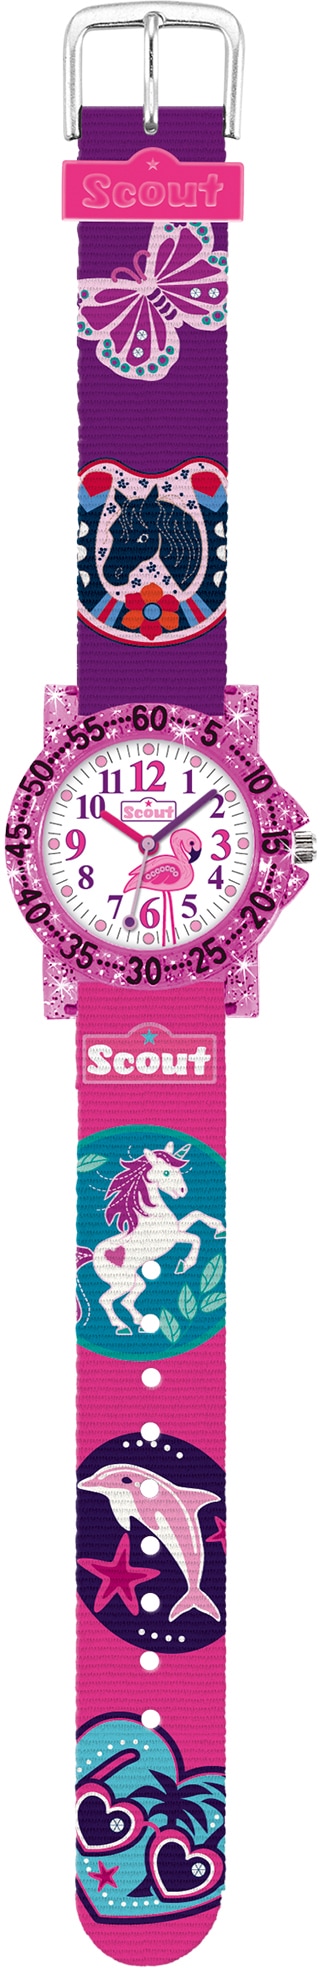 Scout Quarzuhr »The IT-Collection, 280375017« günstig kaufen